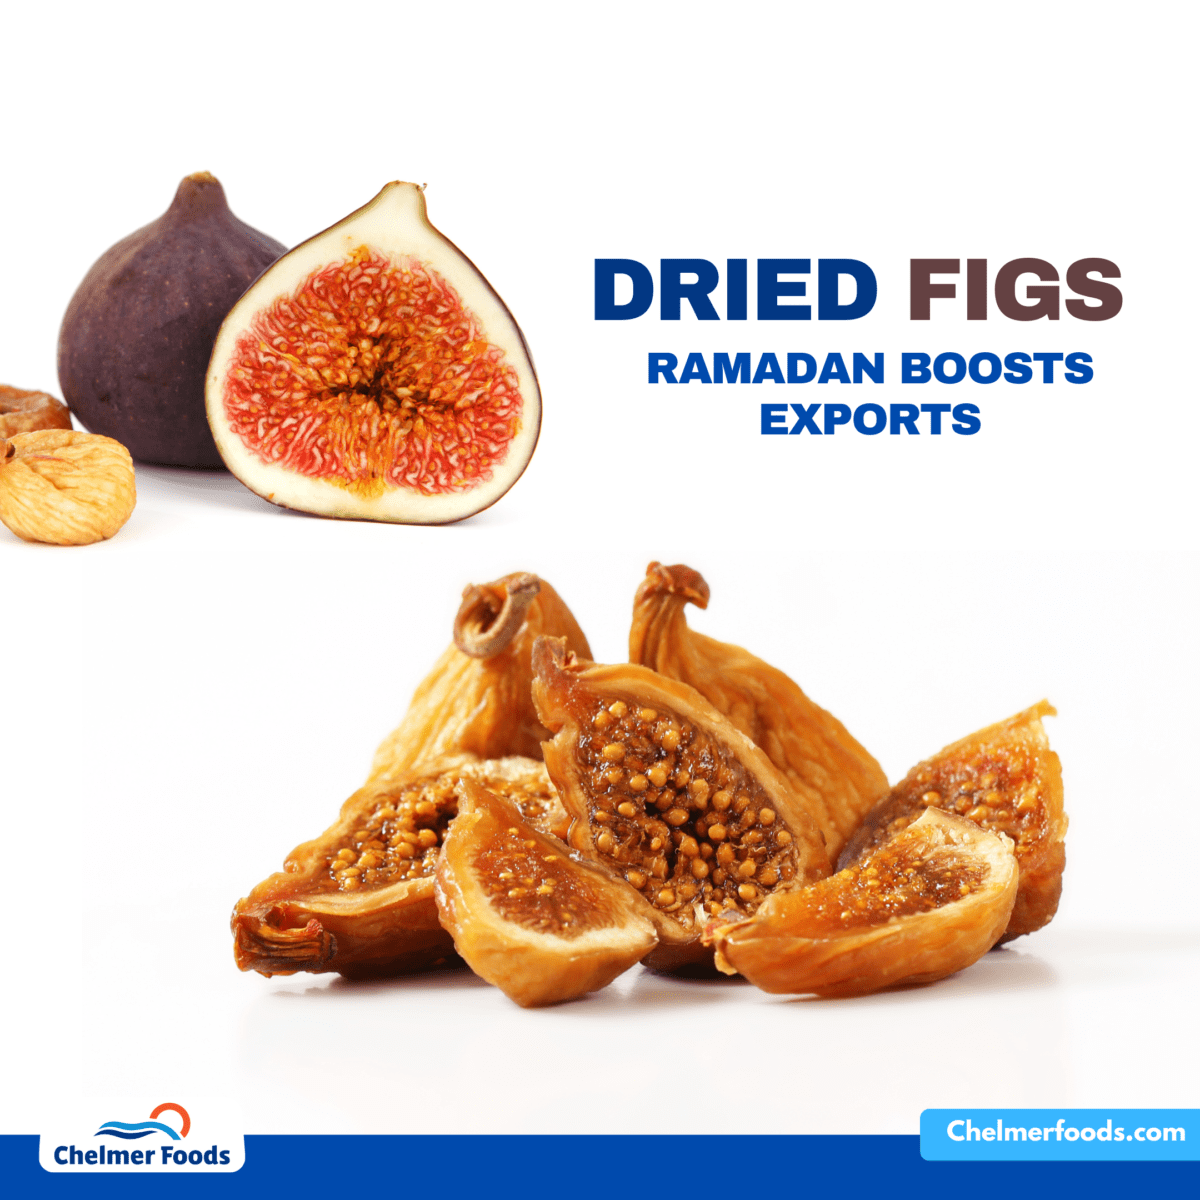 Turkish Dried Figs, Market Update